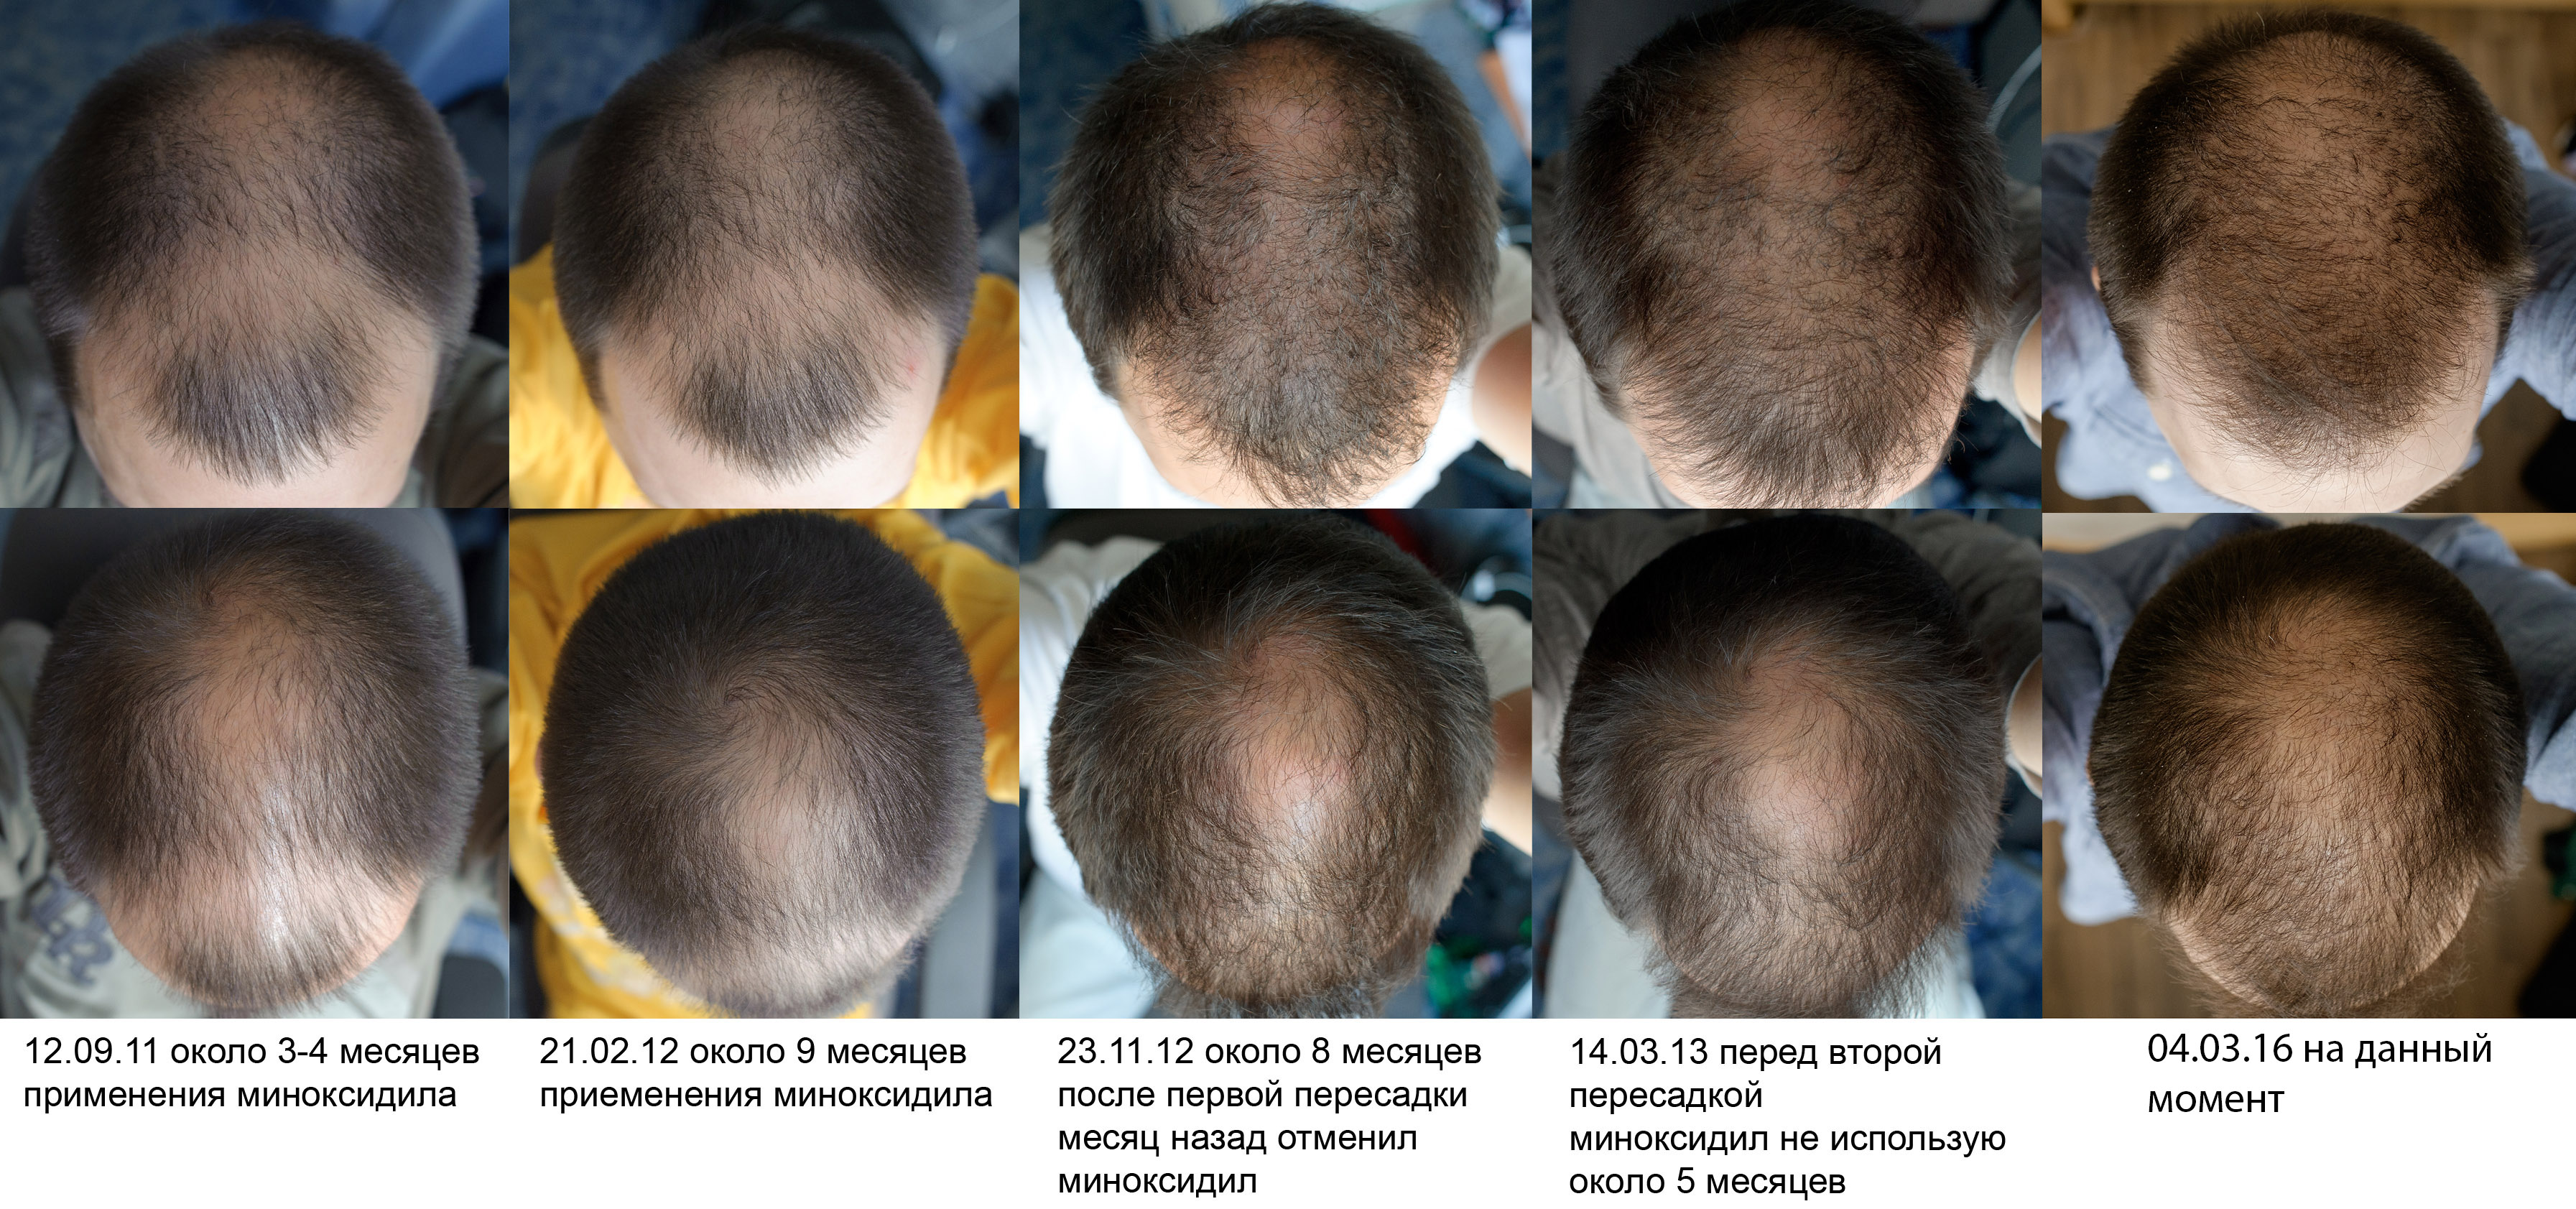 Как остановить выпадение волос после химиотерапии? способы восстановления